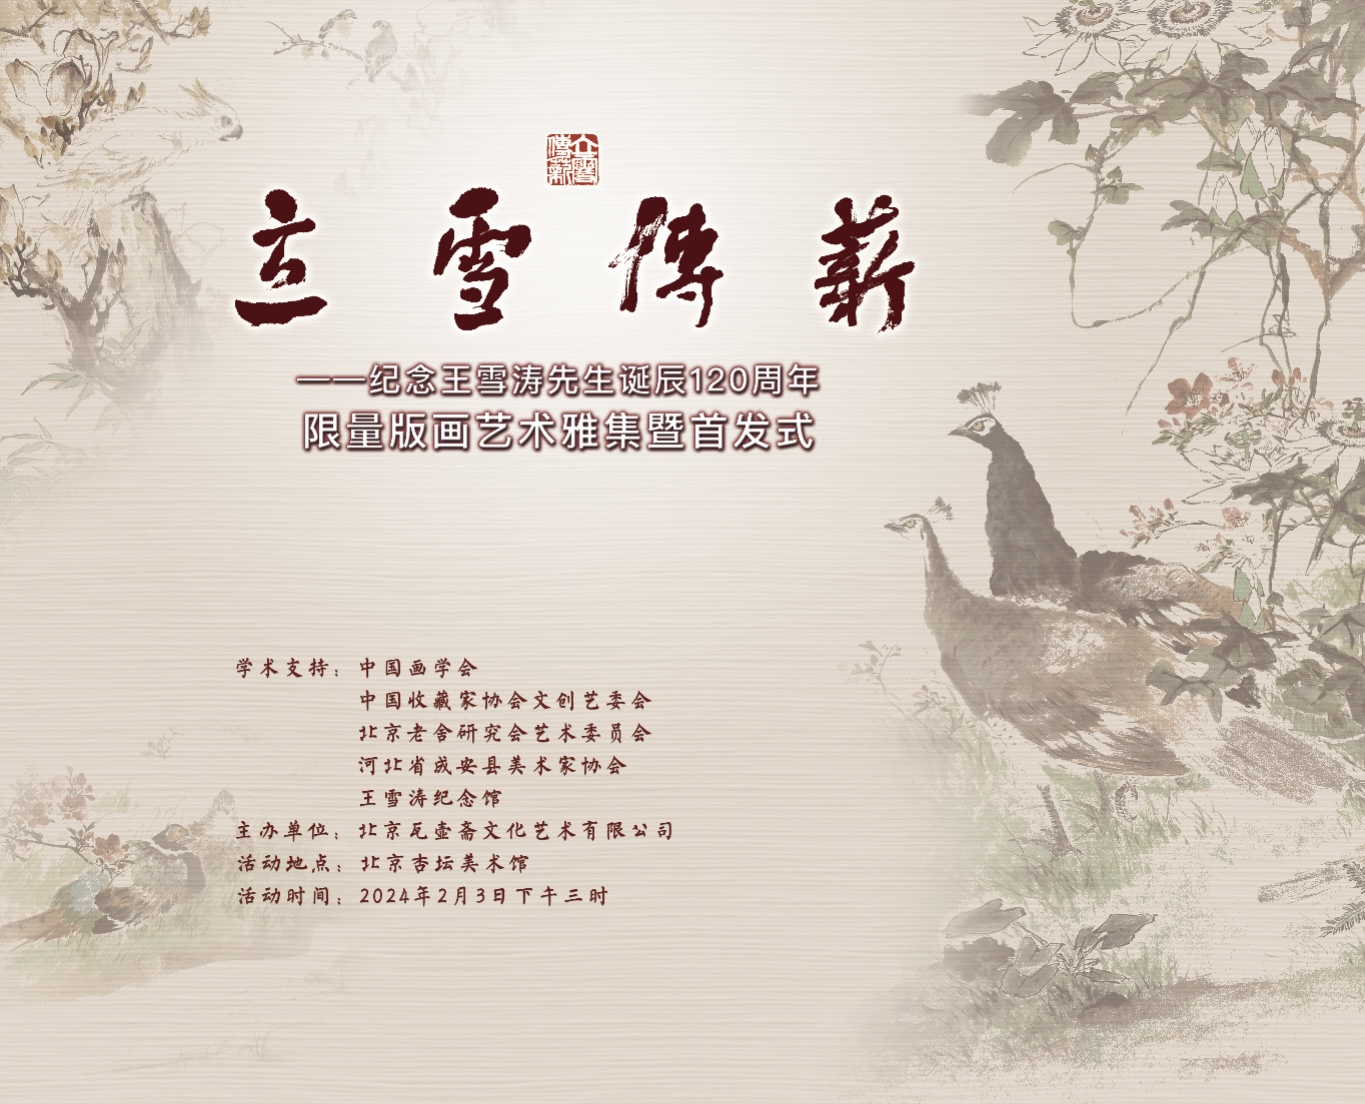 现场丨“立雪传薪——纪念王雪涛先生诞辰120周年限量版画艺术雅集暨首发式”于2024年2月3日下午3